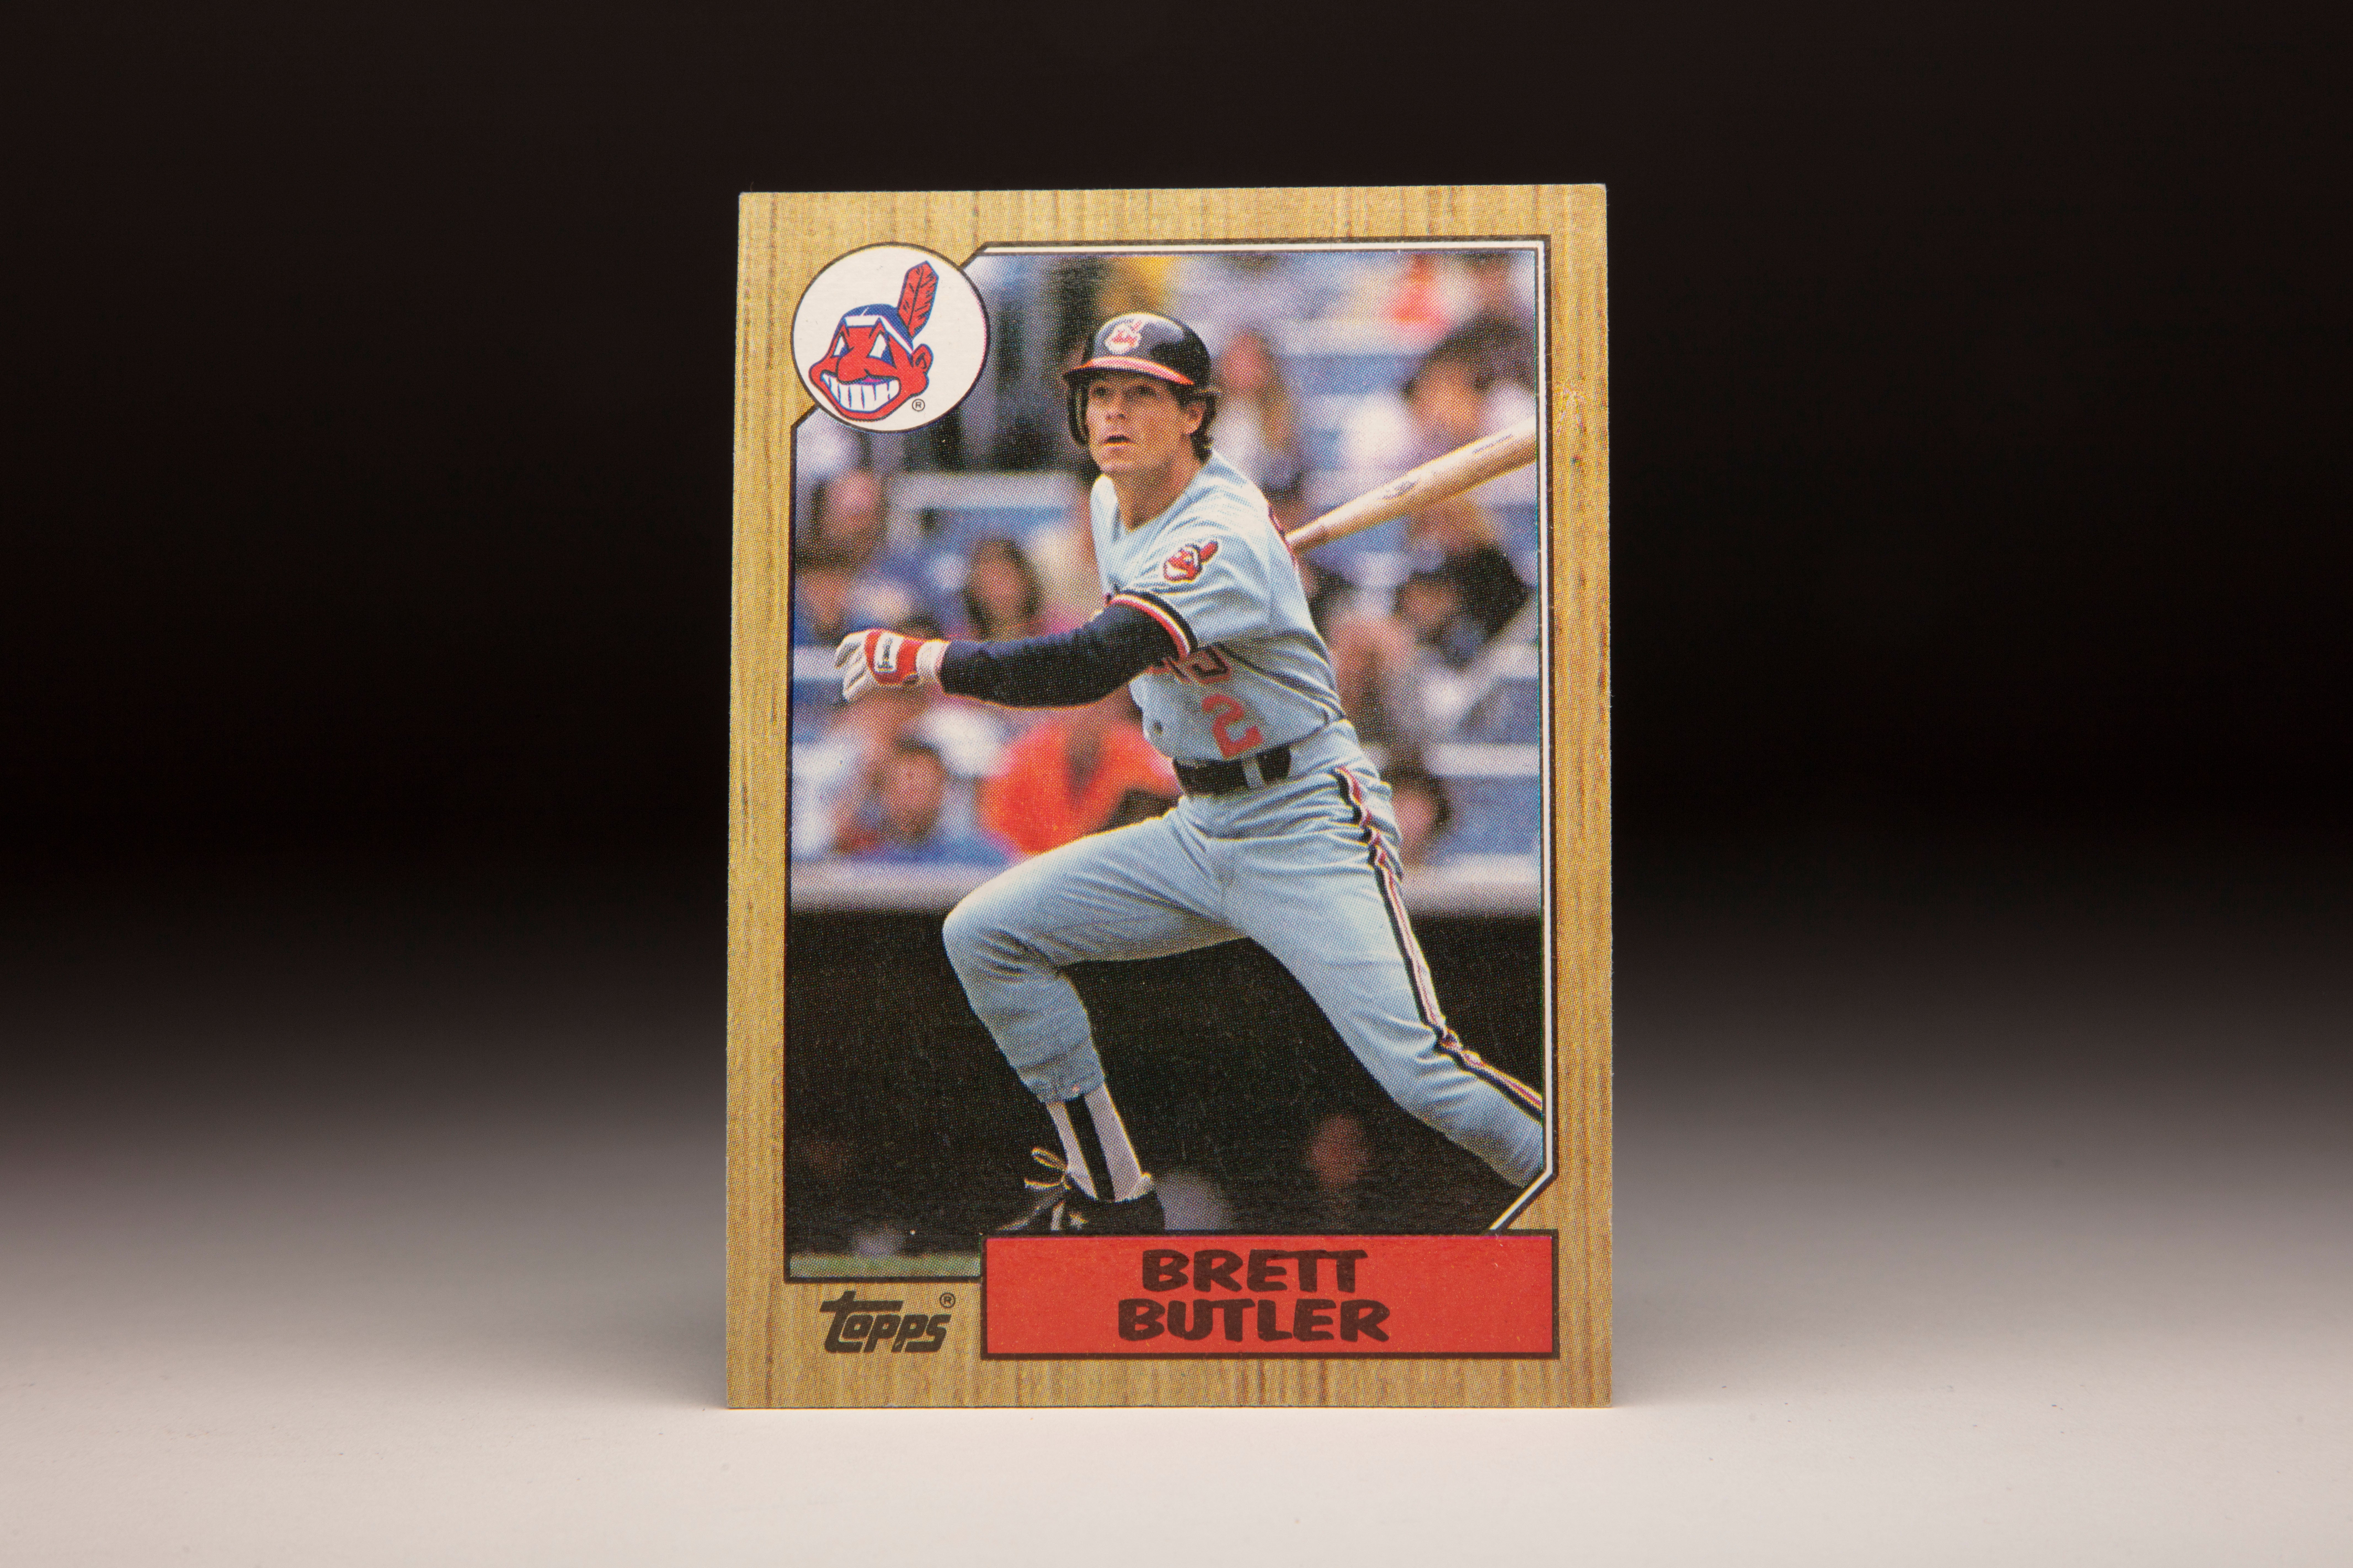 #CardCorner: 1987 Topps Brett Butler